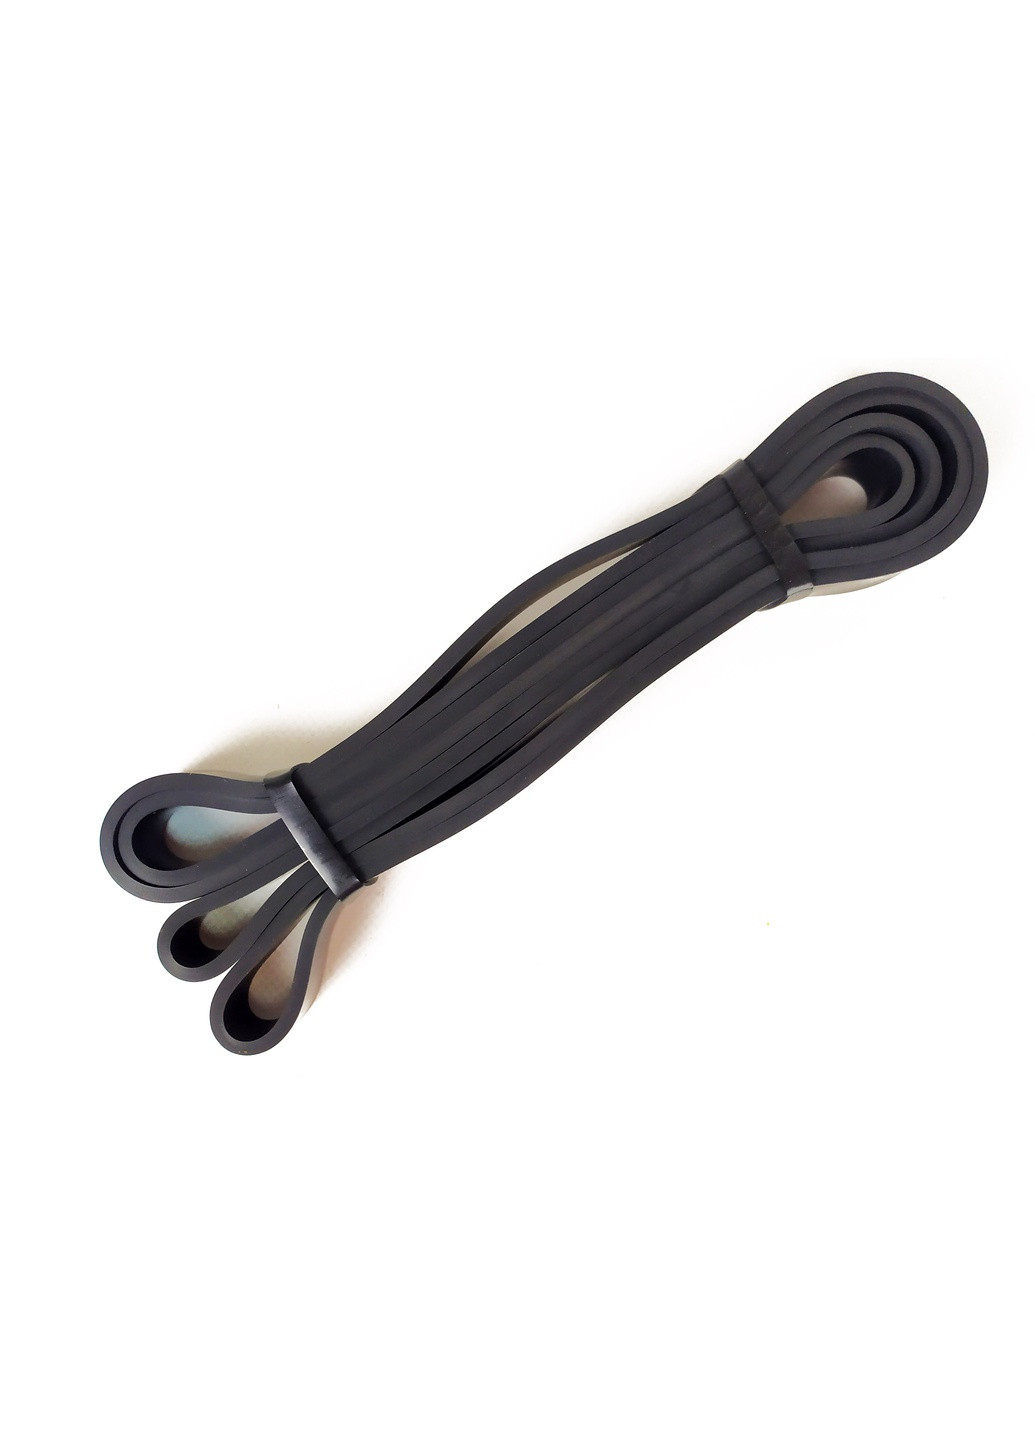 Резиновая петля Power Bands 6-31 кг (для фитнеса, тренировок, подтягиваний, резина для турника, резинка-эспандер) ST631-Bk EasyFit (241214849)